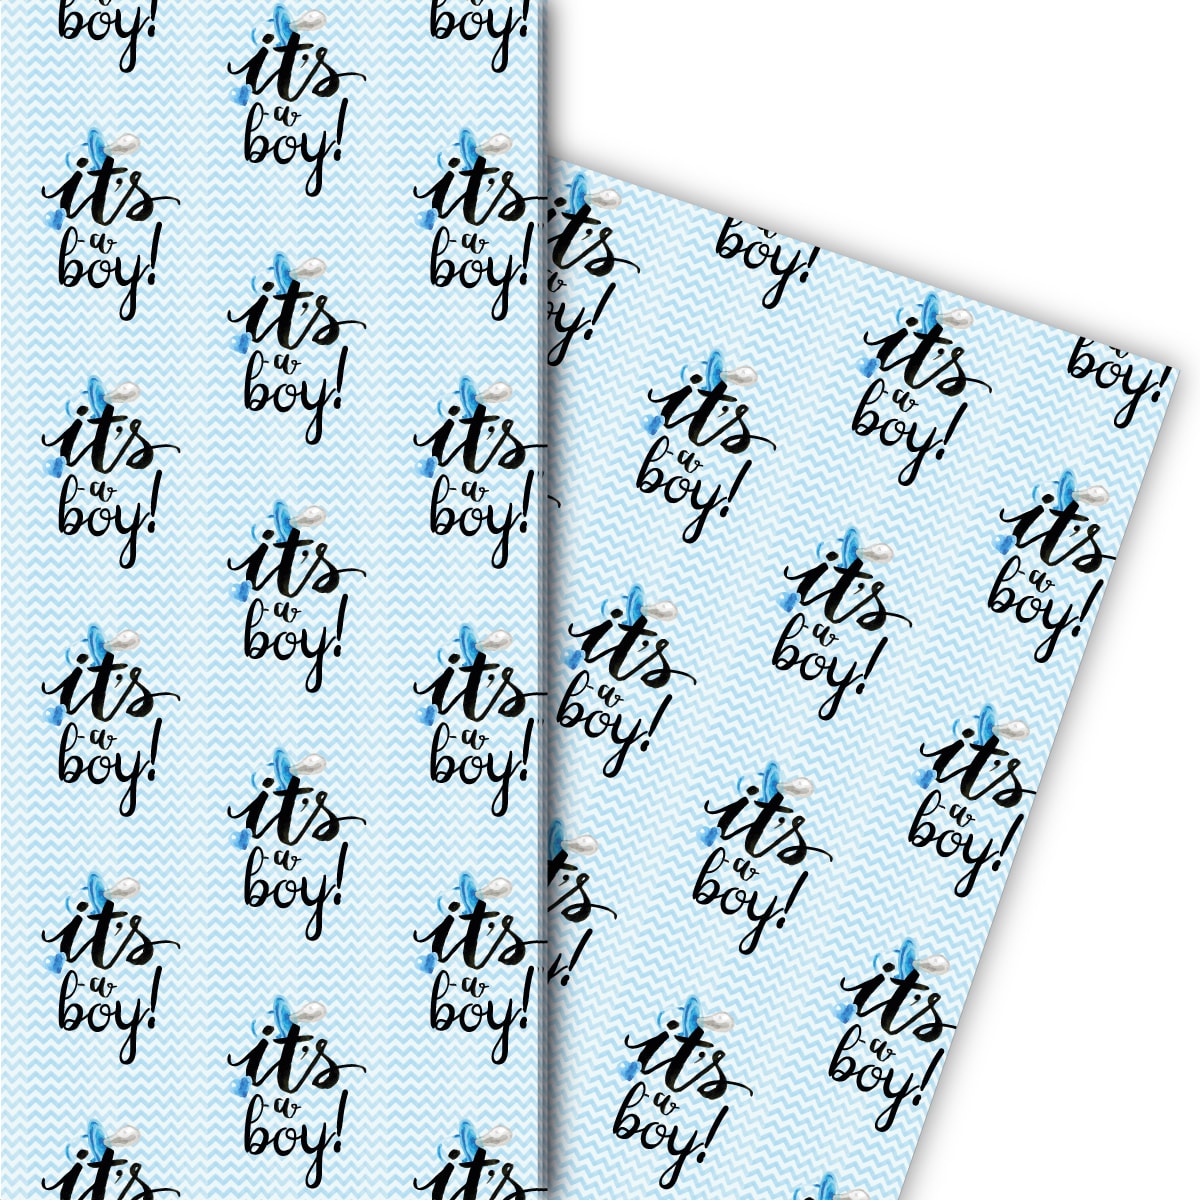 Kartenkaufrausch: Hellblaues Baby Geschenkpapier mit aus unserer Baby Papeterie in hellblau